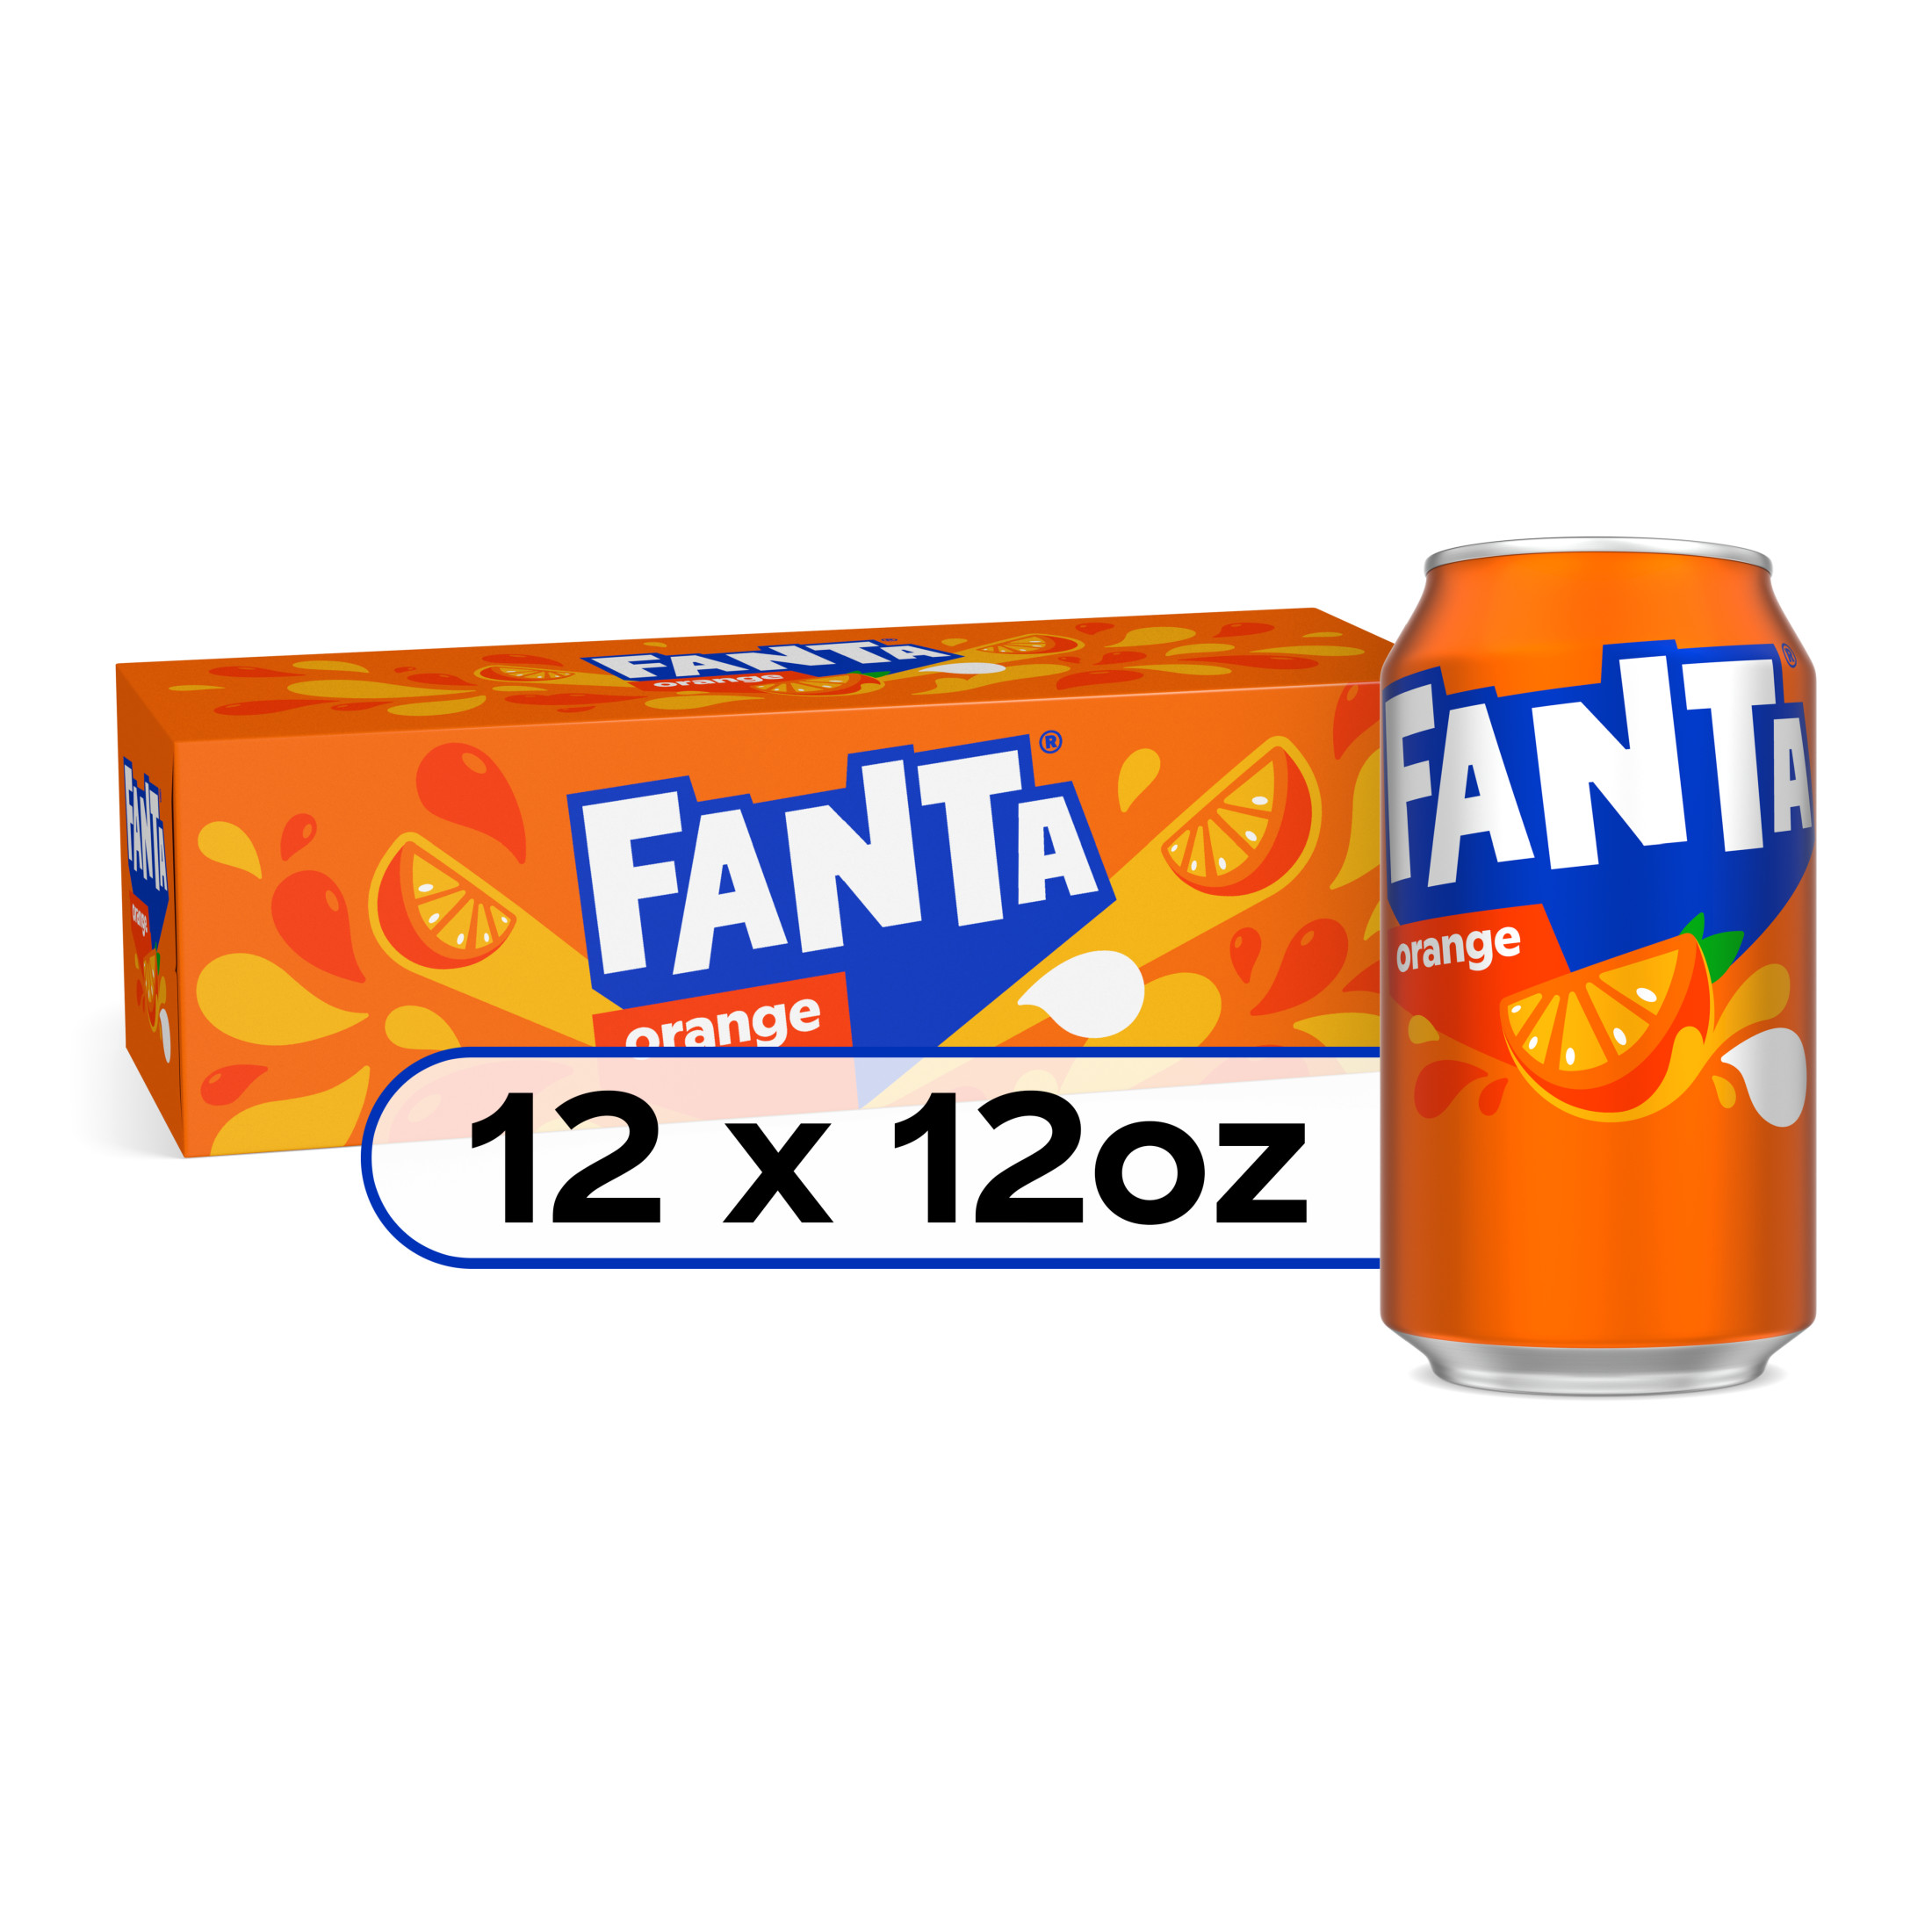 Fanta Orange Fruit Soda Pop, 12 fl oz, 12 Pack Cans - image 1 of 8